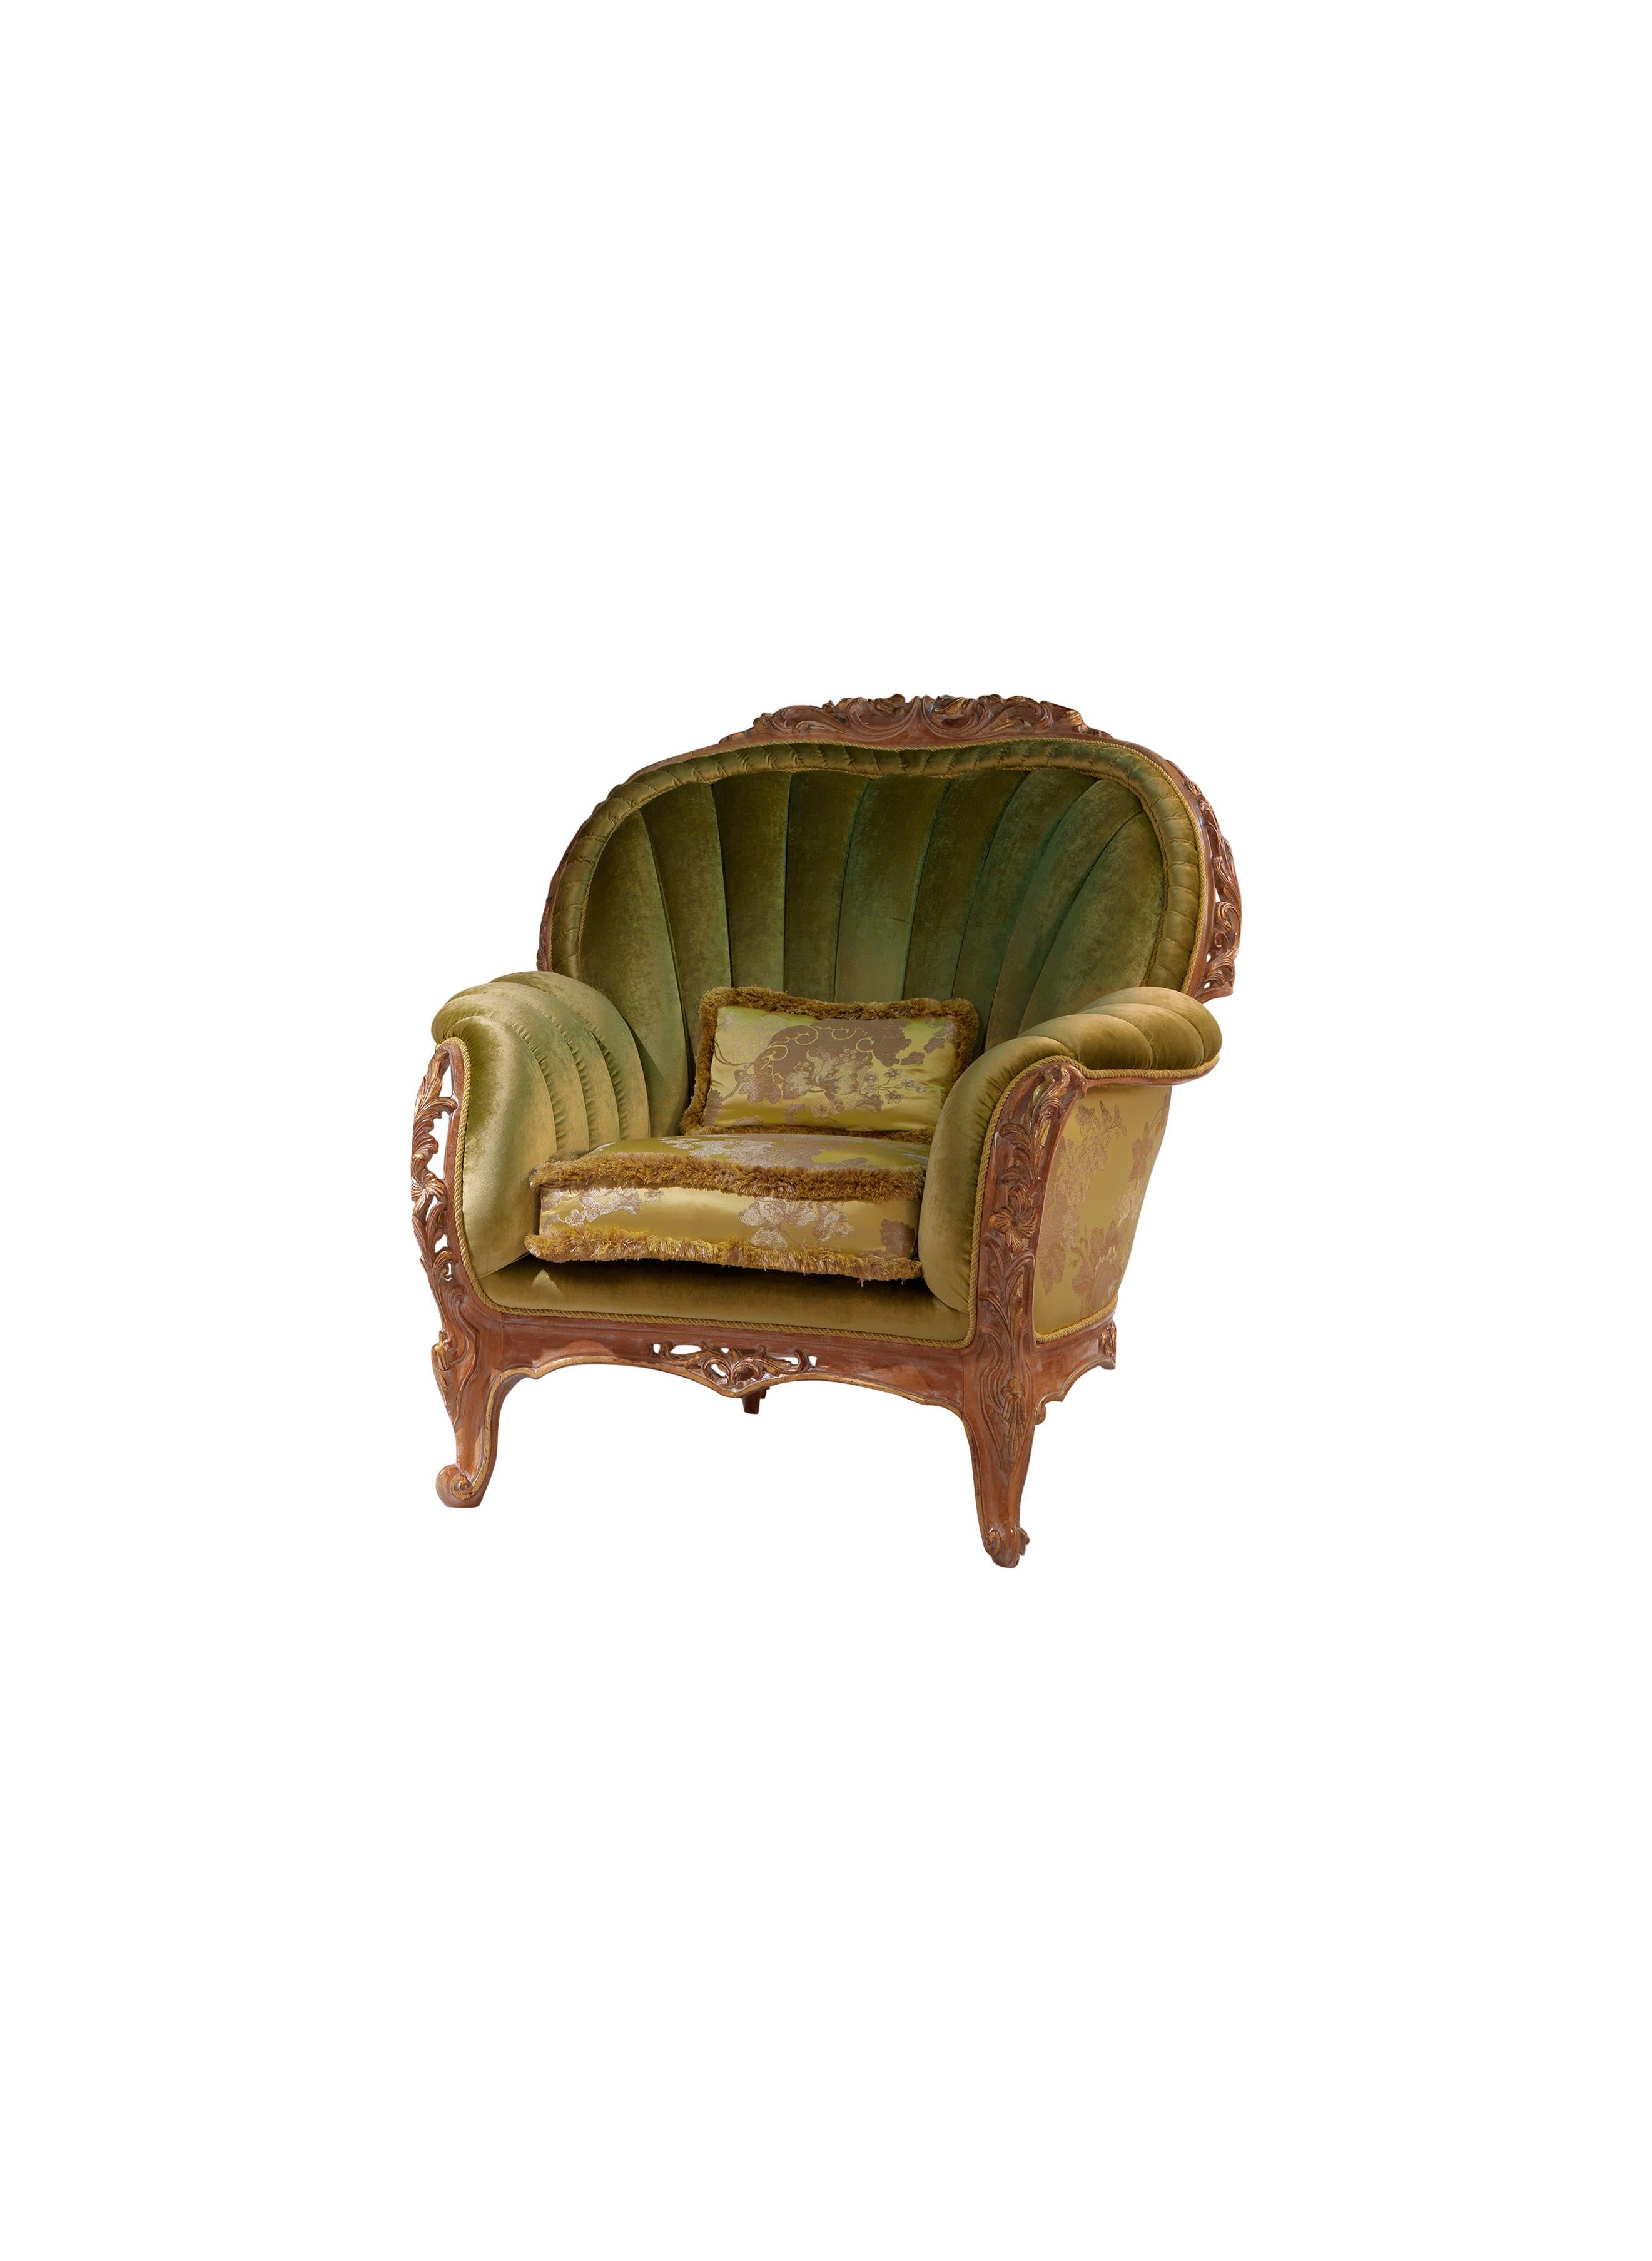 Der prächtige Sessel Monet präsentiert ein kunstvoll geschnitztes, verziertes Gestell mit floralen Motiven und abgerundeten Kanten, gepolsterte Seiten und Armlehnen, Sitzkissen mit Bürste. Er ist mit einem unifarbenen Samt gepolstert, in Kombination